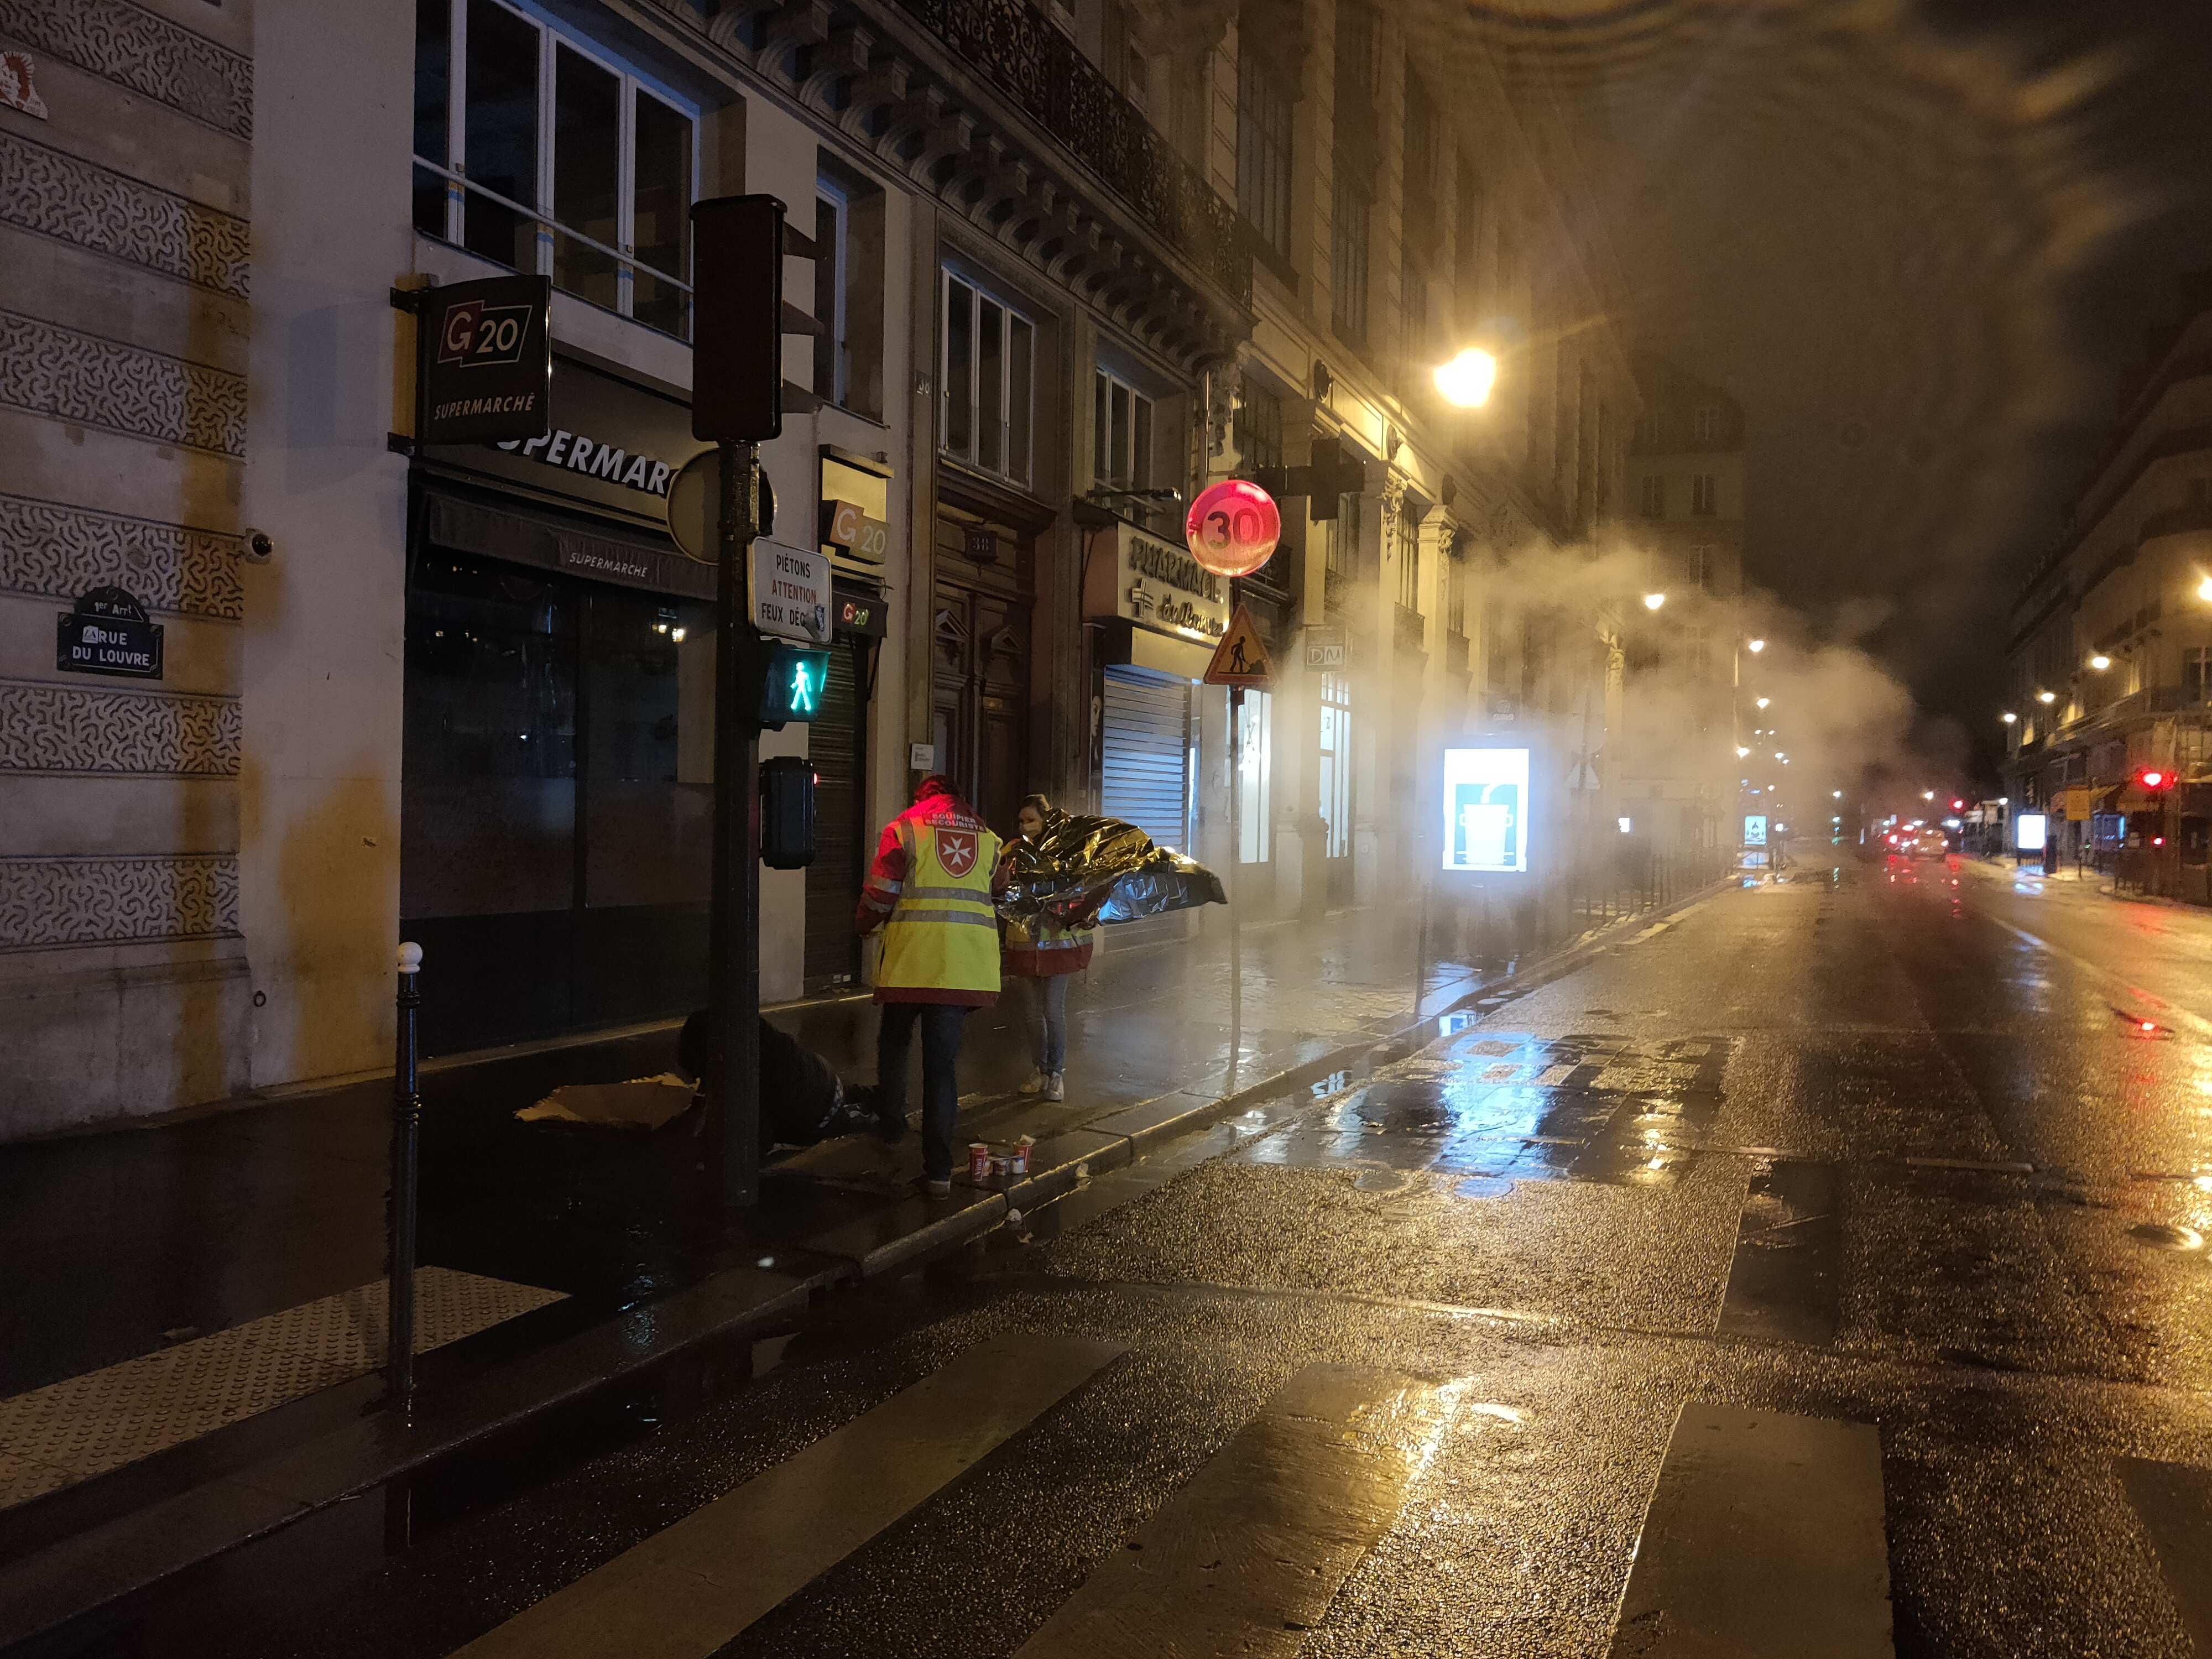 Légende : Cédric et Constance recouvrent l’homme rencontré rue du Louvre avec une couverture de survie donnée par un agent de la RATP. Crédit photo : Carenews.